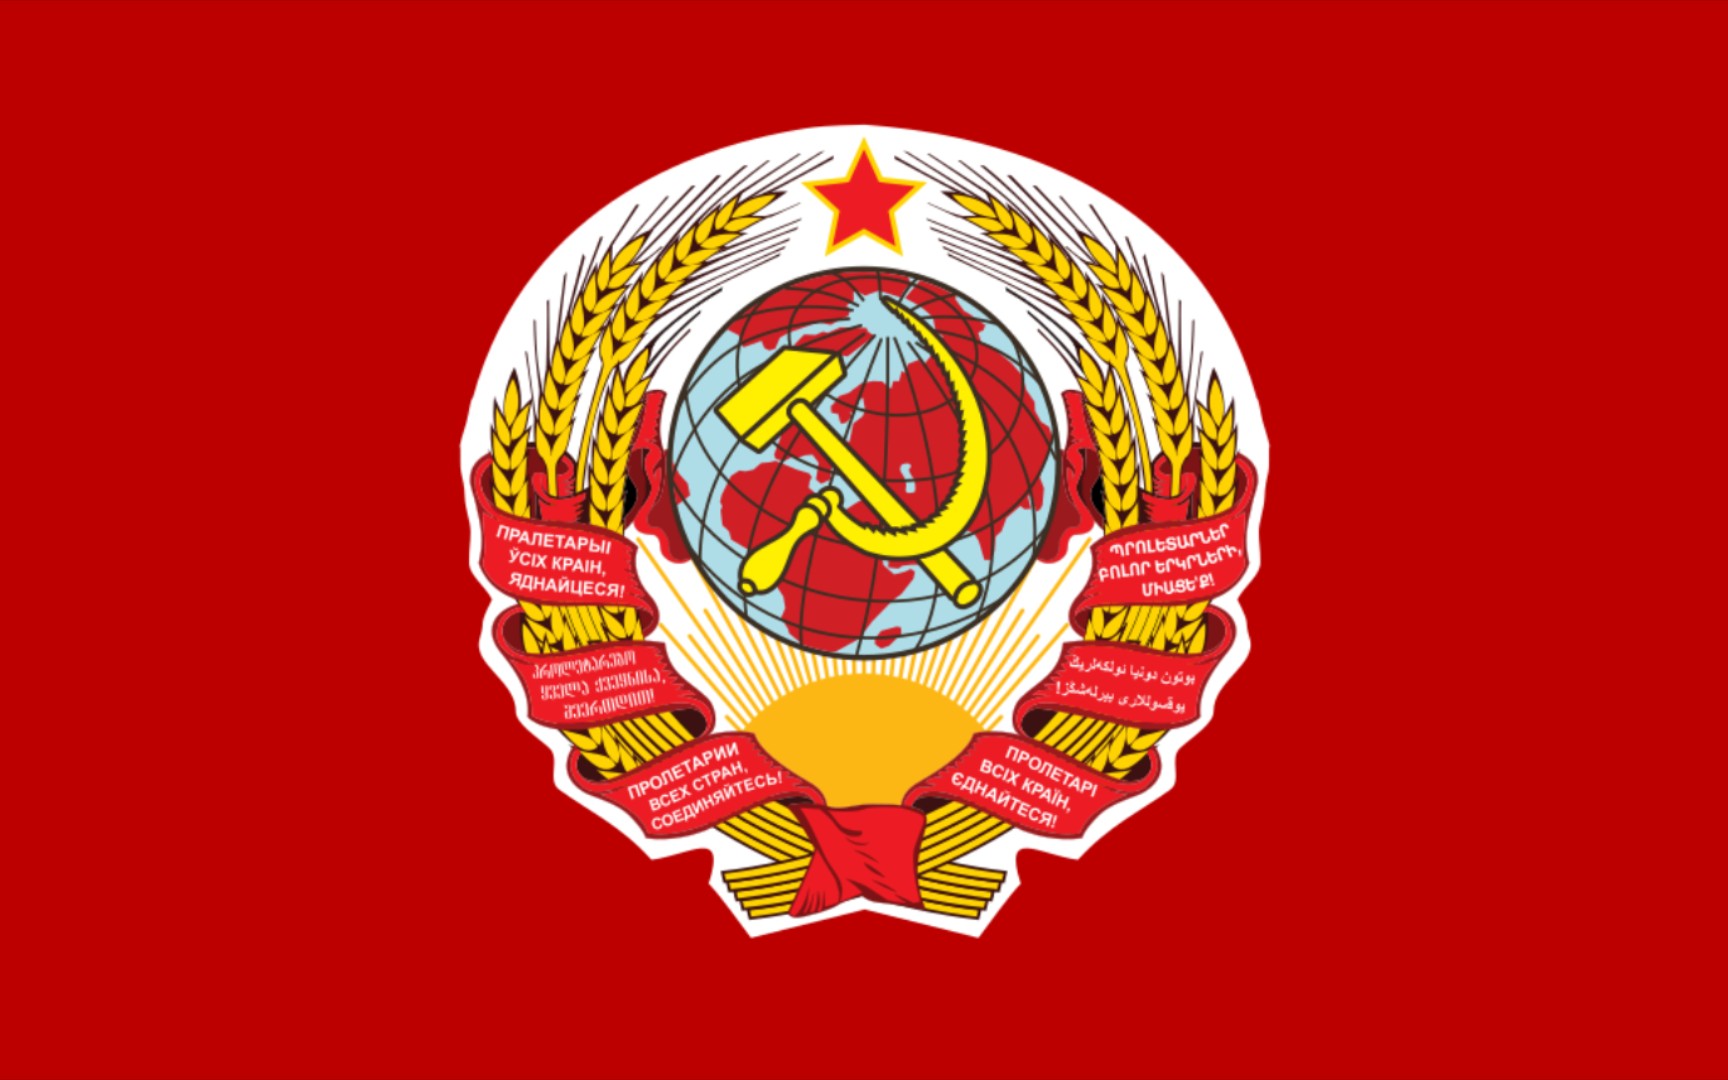 共产国际图片标志图片